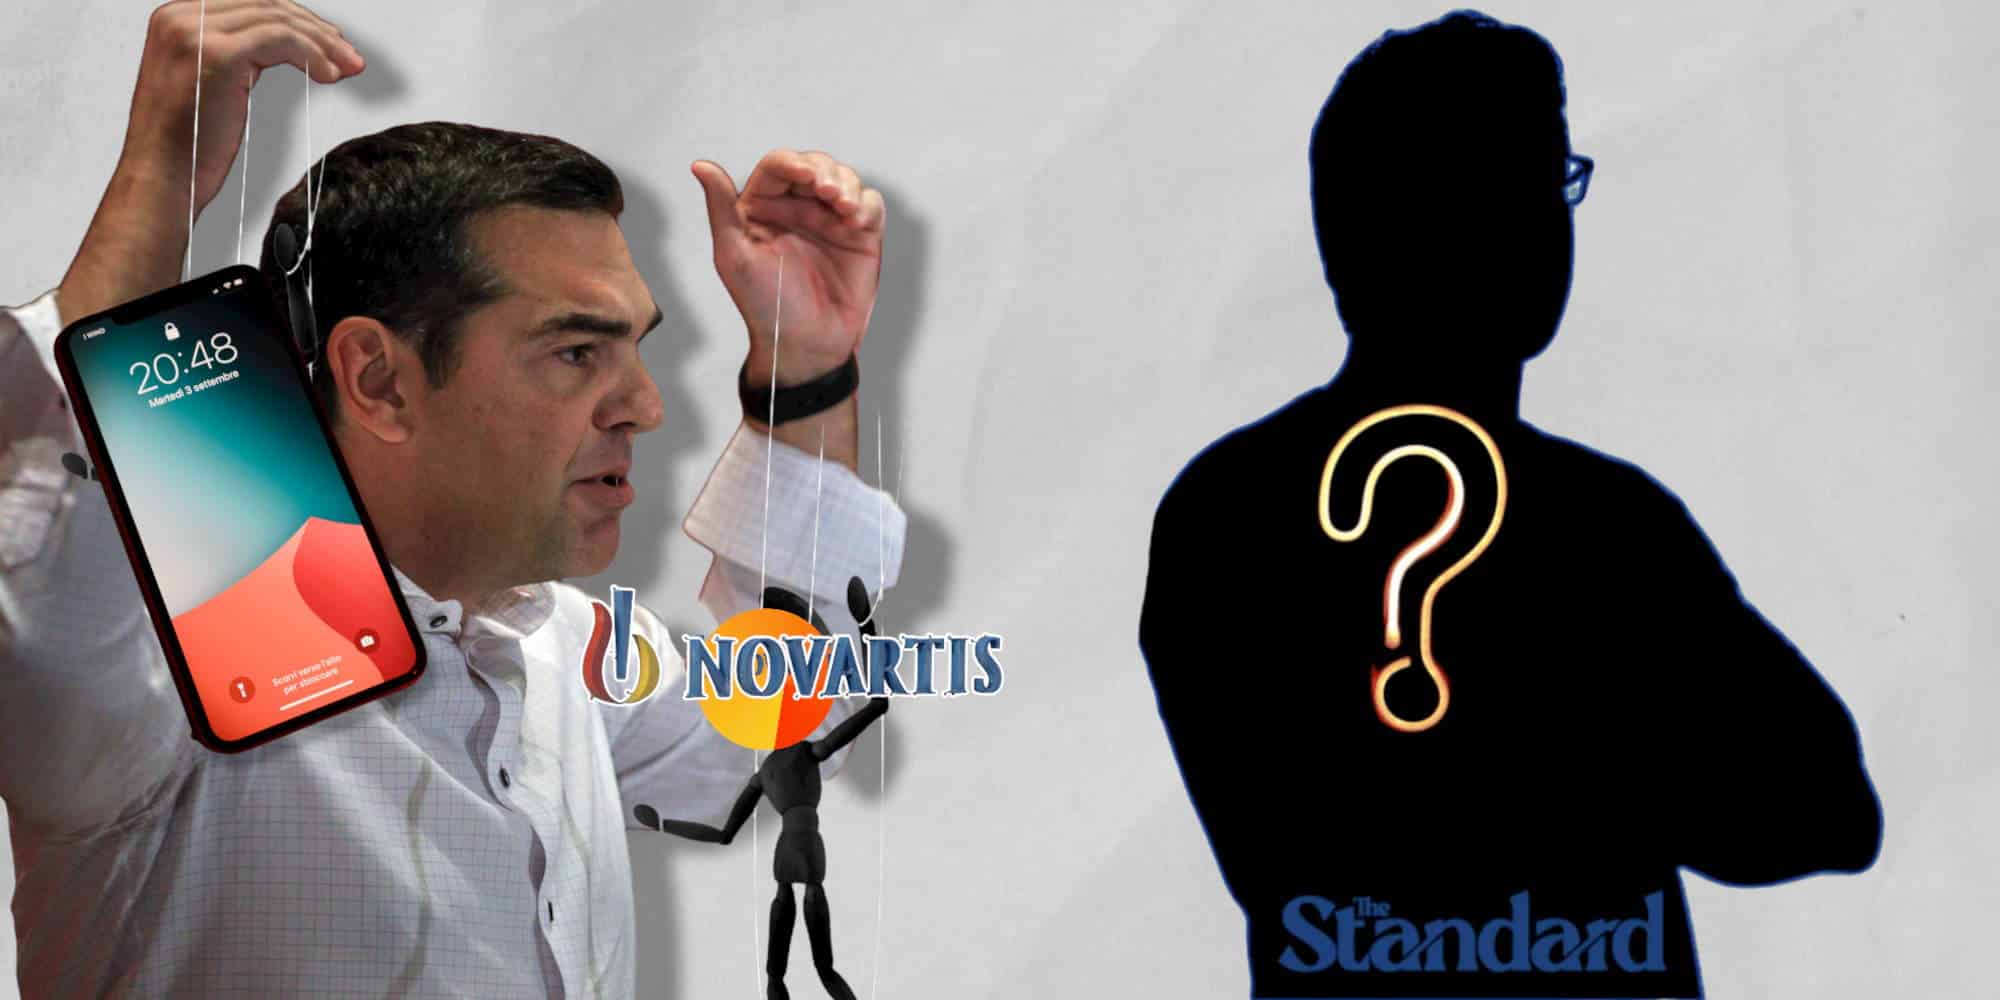 Ο πρόεδρος του ΣΥΡΙΖΑ, Αλέξης Τσίπρας και οι υποθέσεις των υποκλοπών και της Novartis